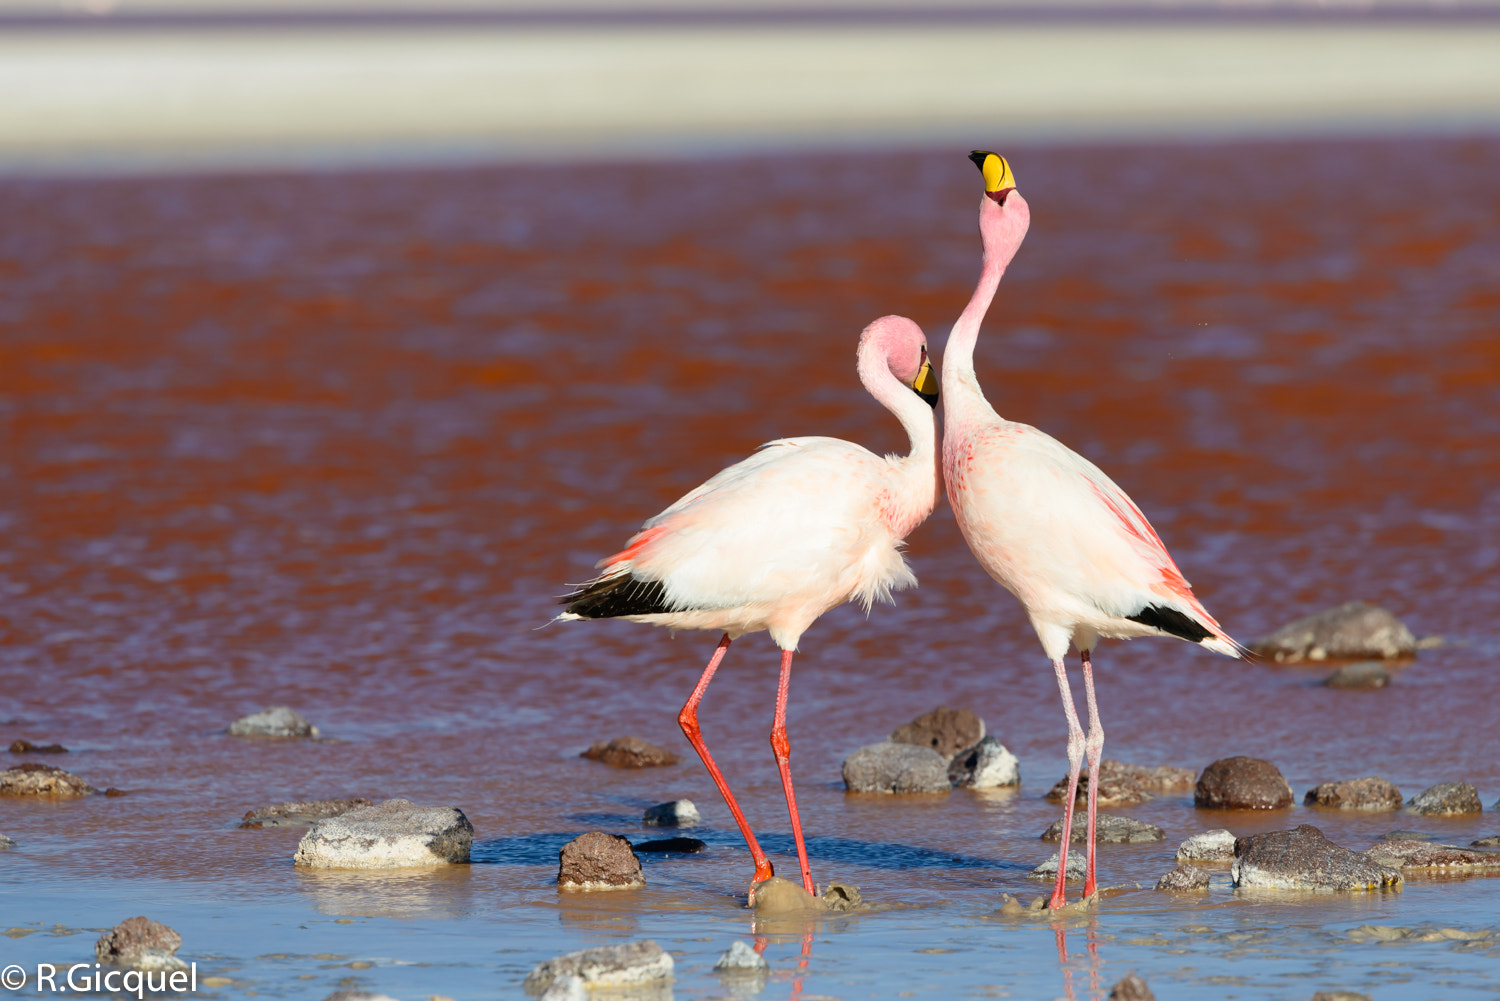 Nikon D800 sample photo. Flamingo at laguna colorada photography